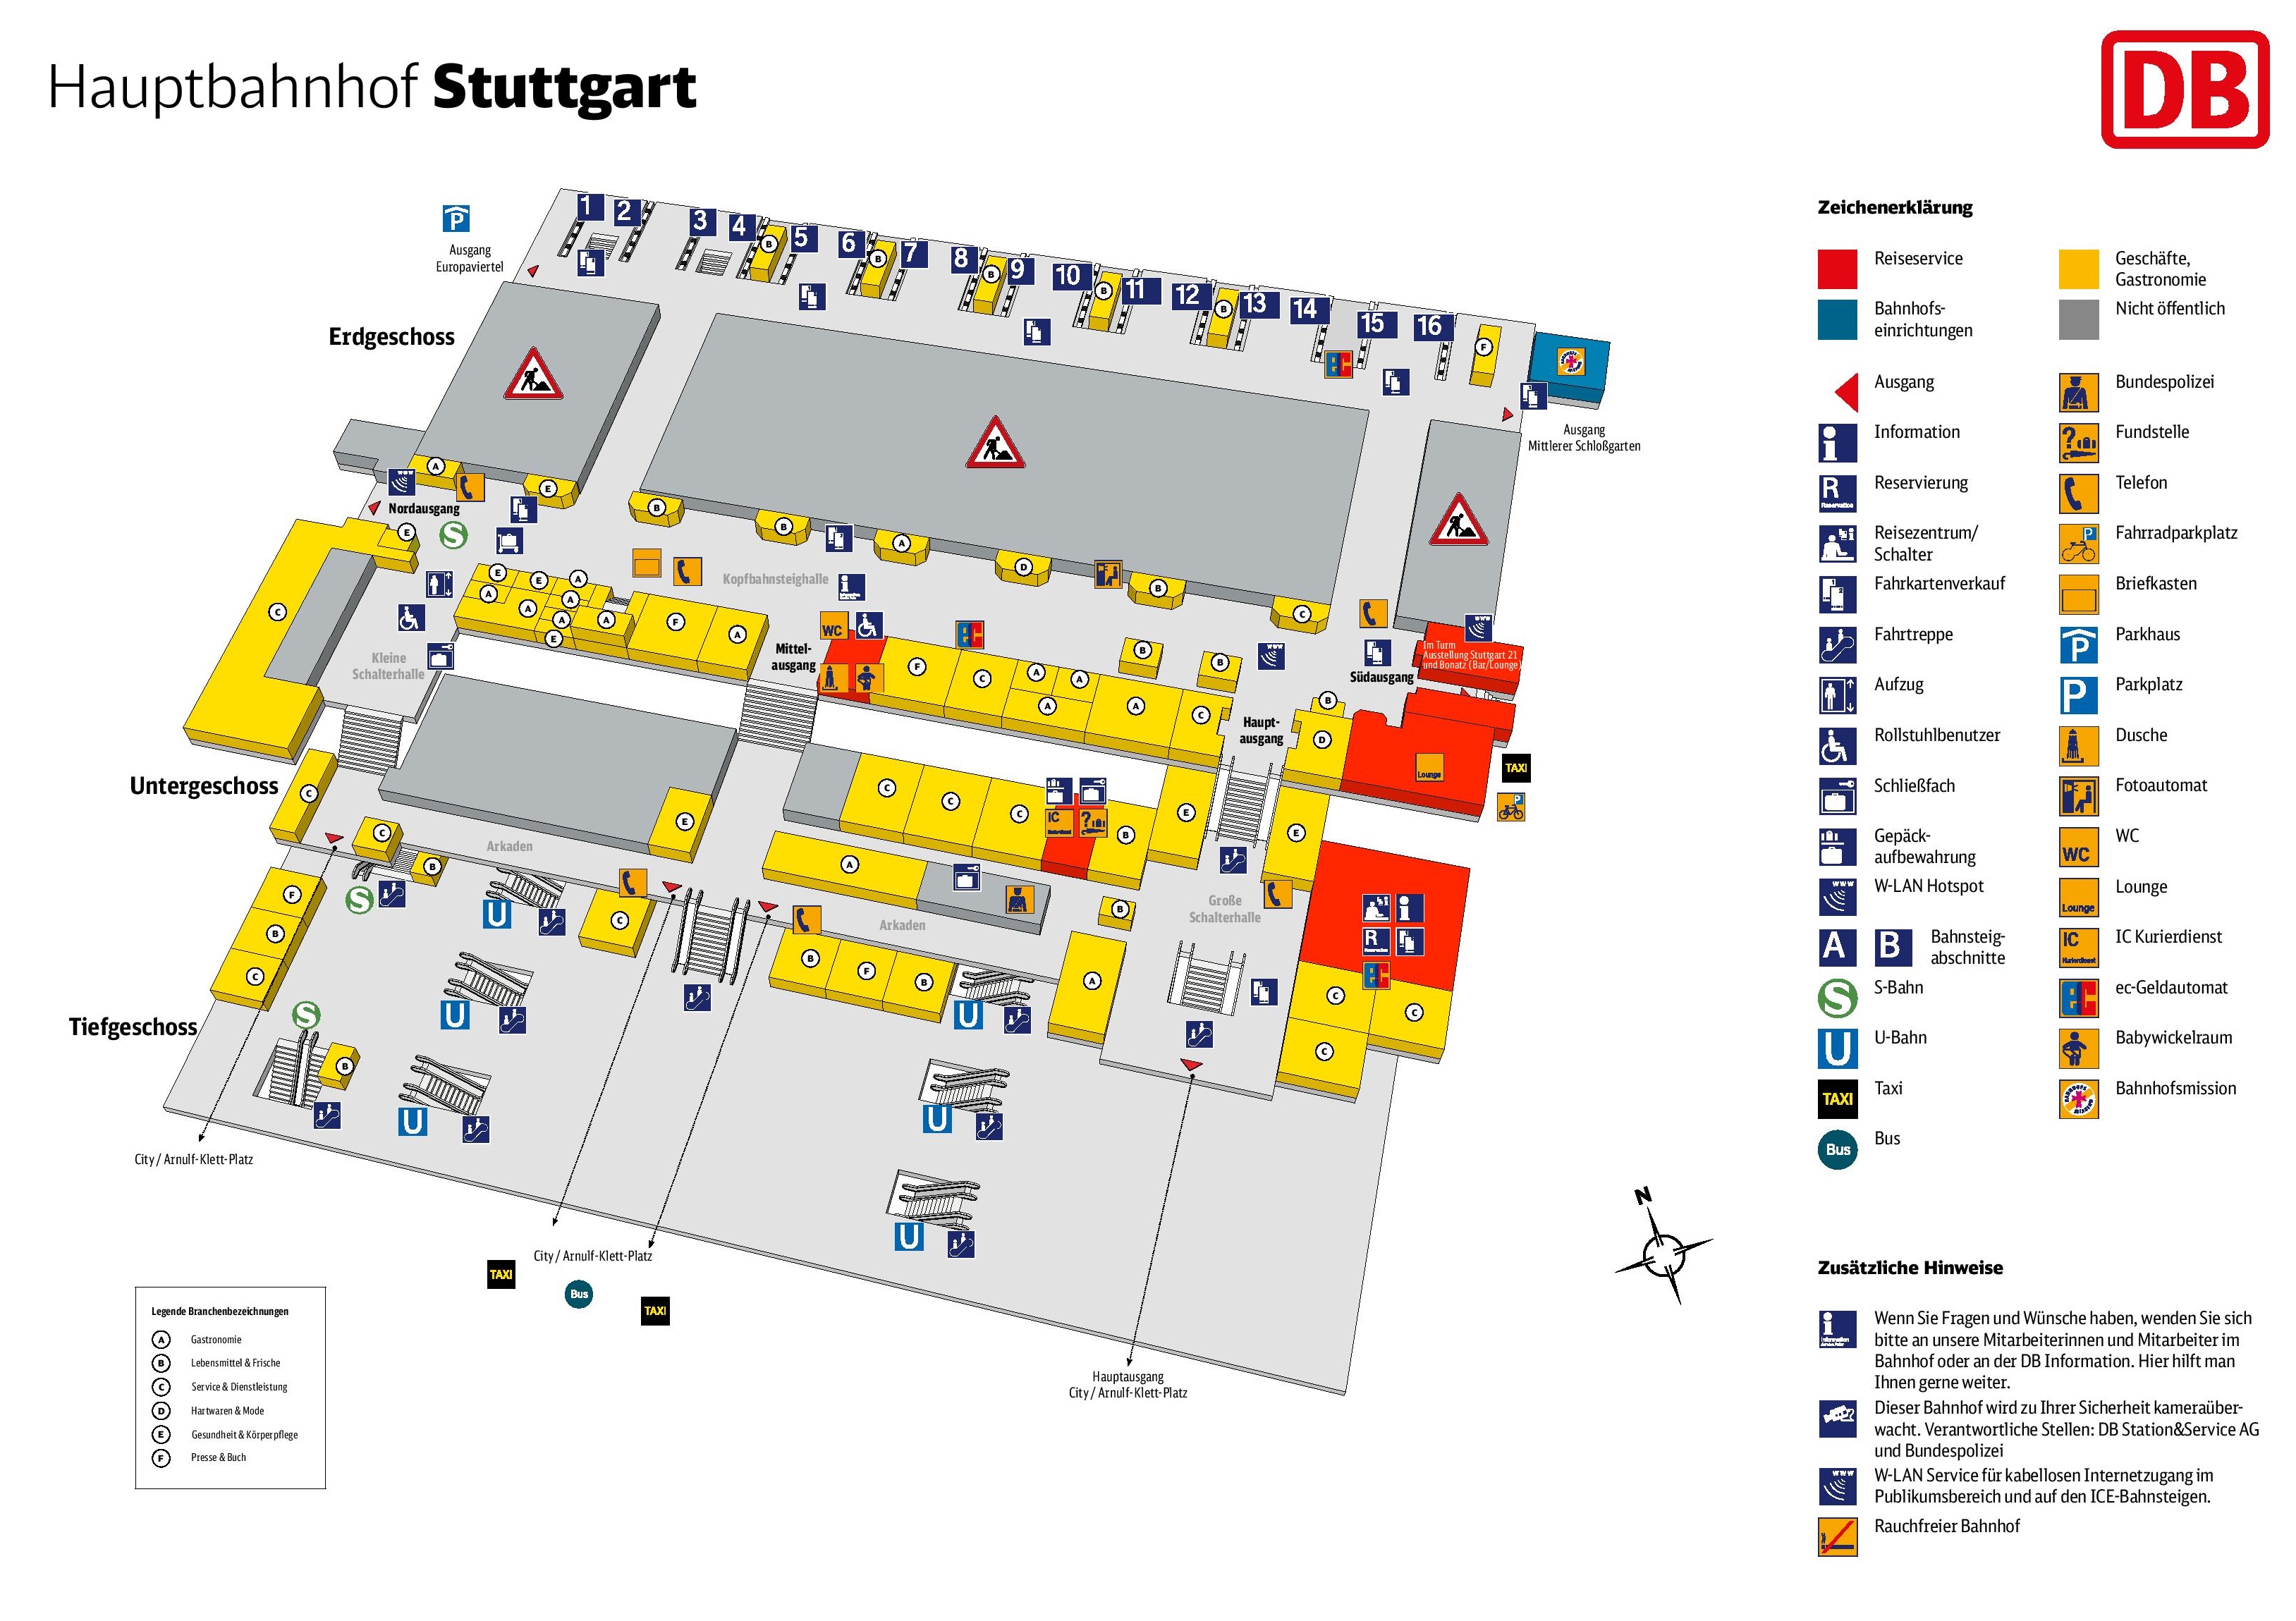 Stuttgart hauptbahnhof map (central train station)